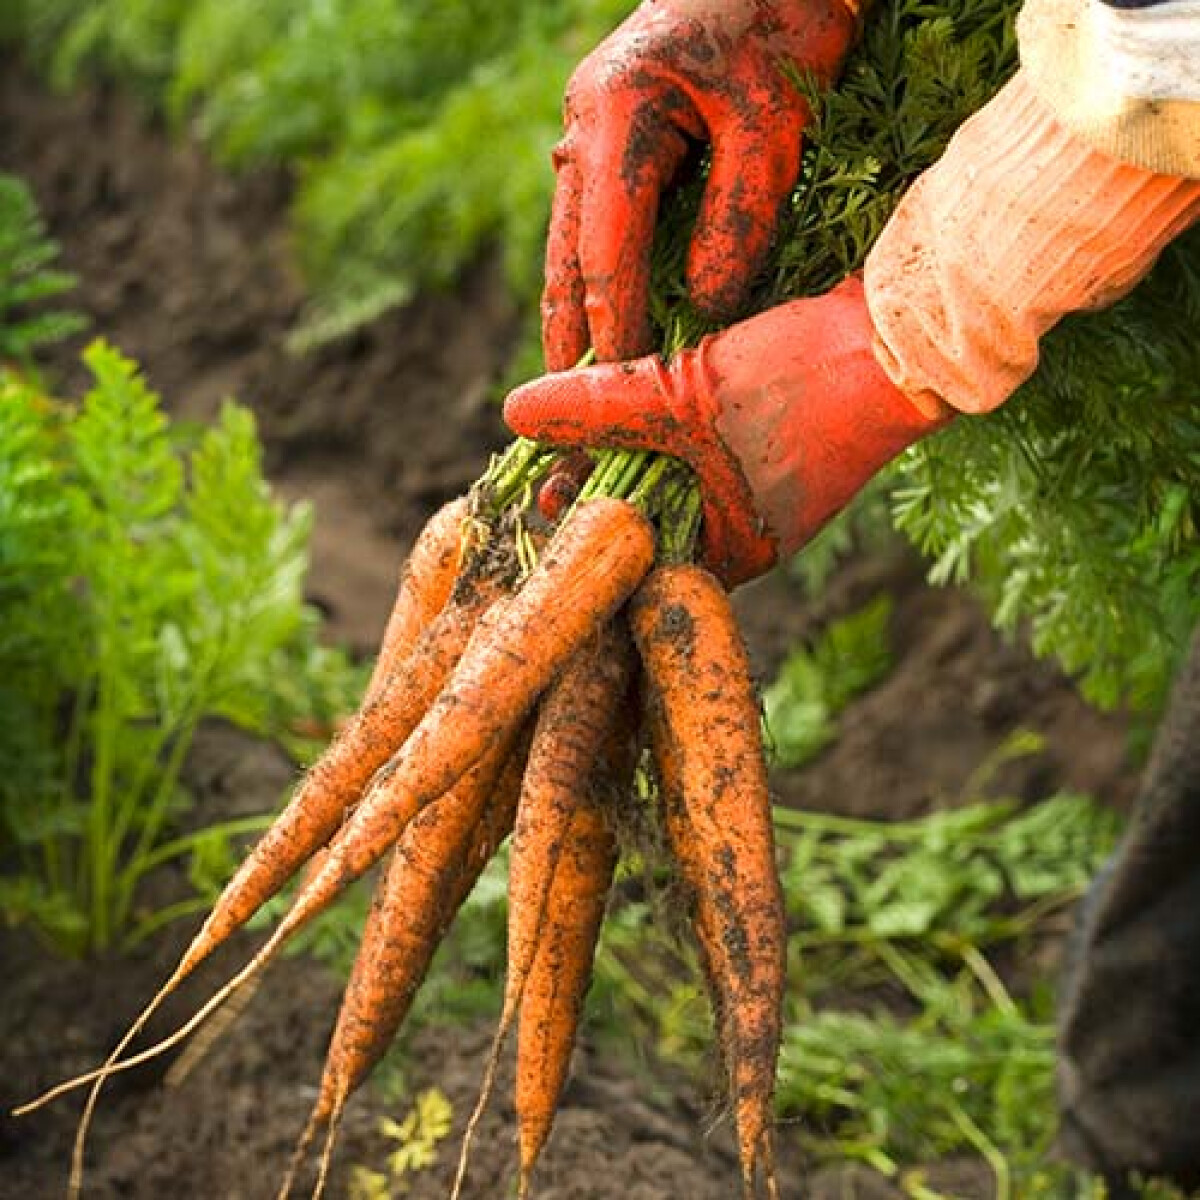 Les carottes de couleur - Priméale